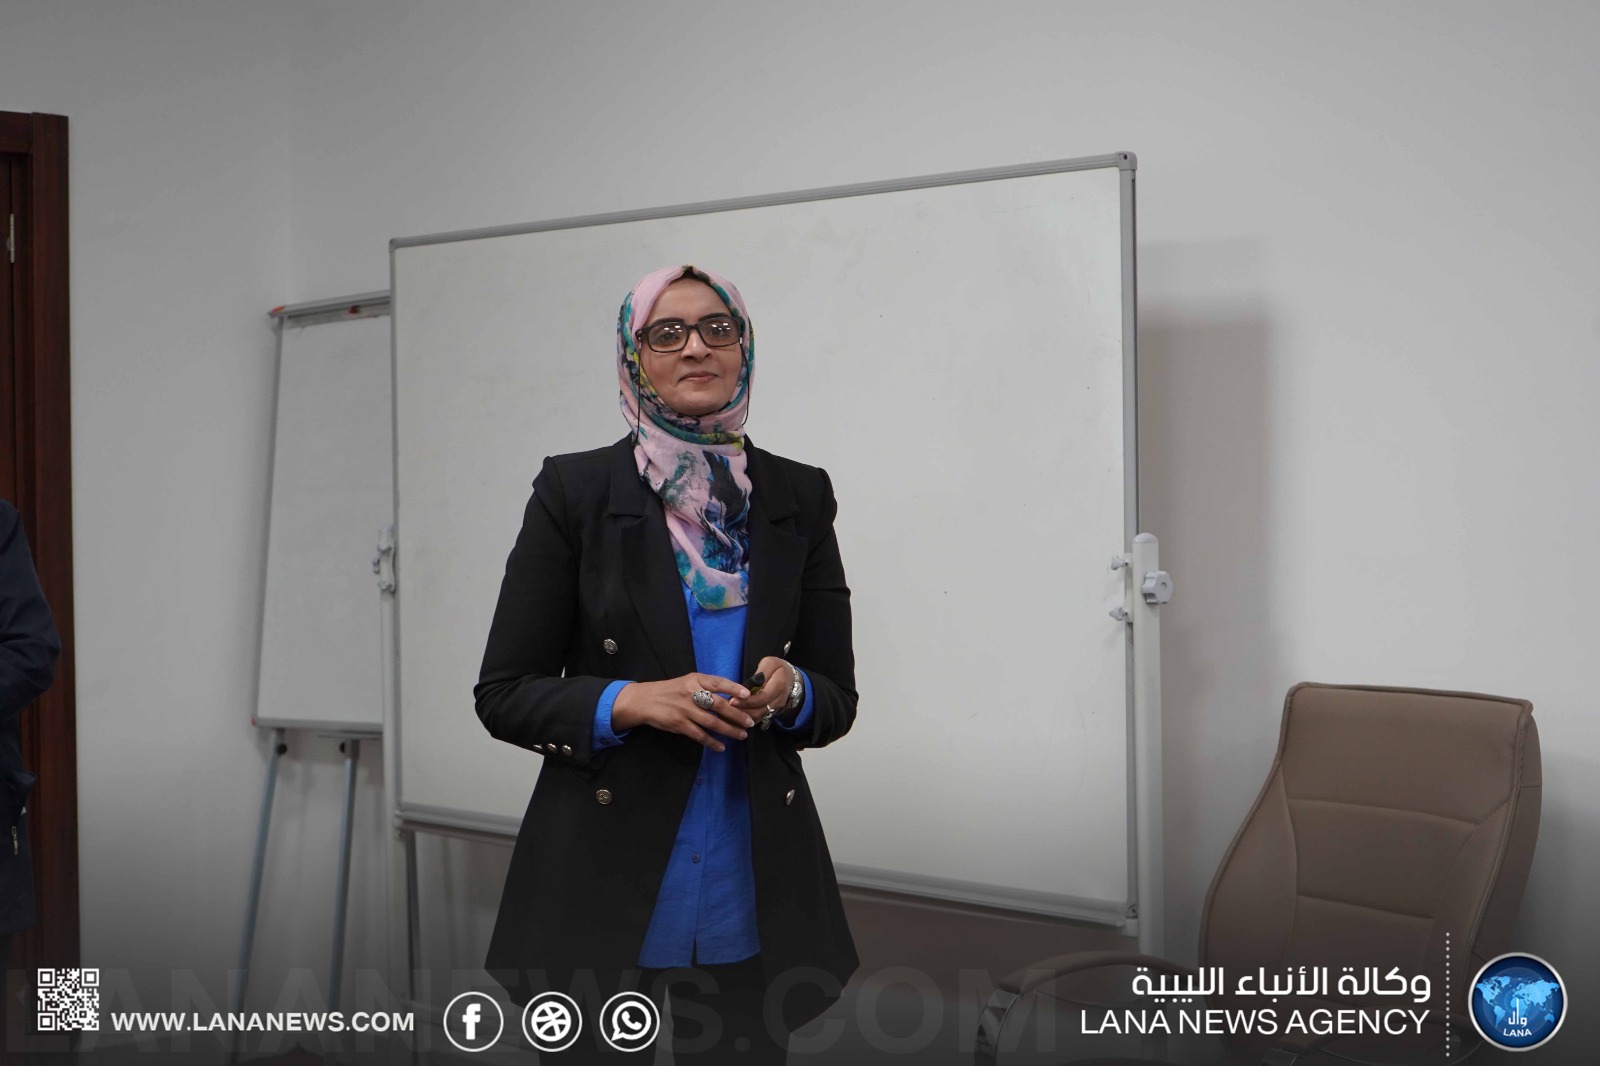 اختتام الورشة التدريبية المنظمة بالتعاون بين الشراكة المجتمعية ووزارة المرأة بمقر وكالة الأنباء الليبية